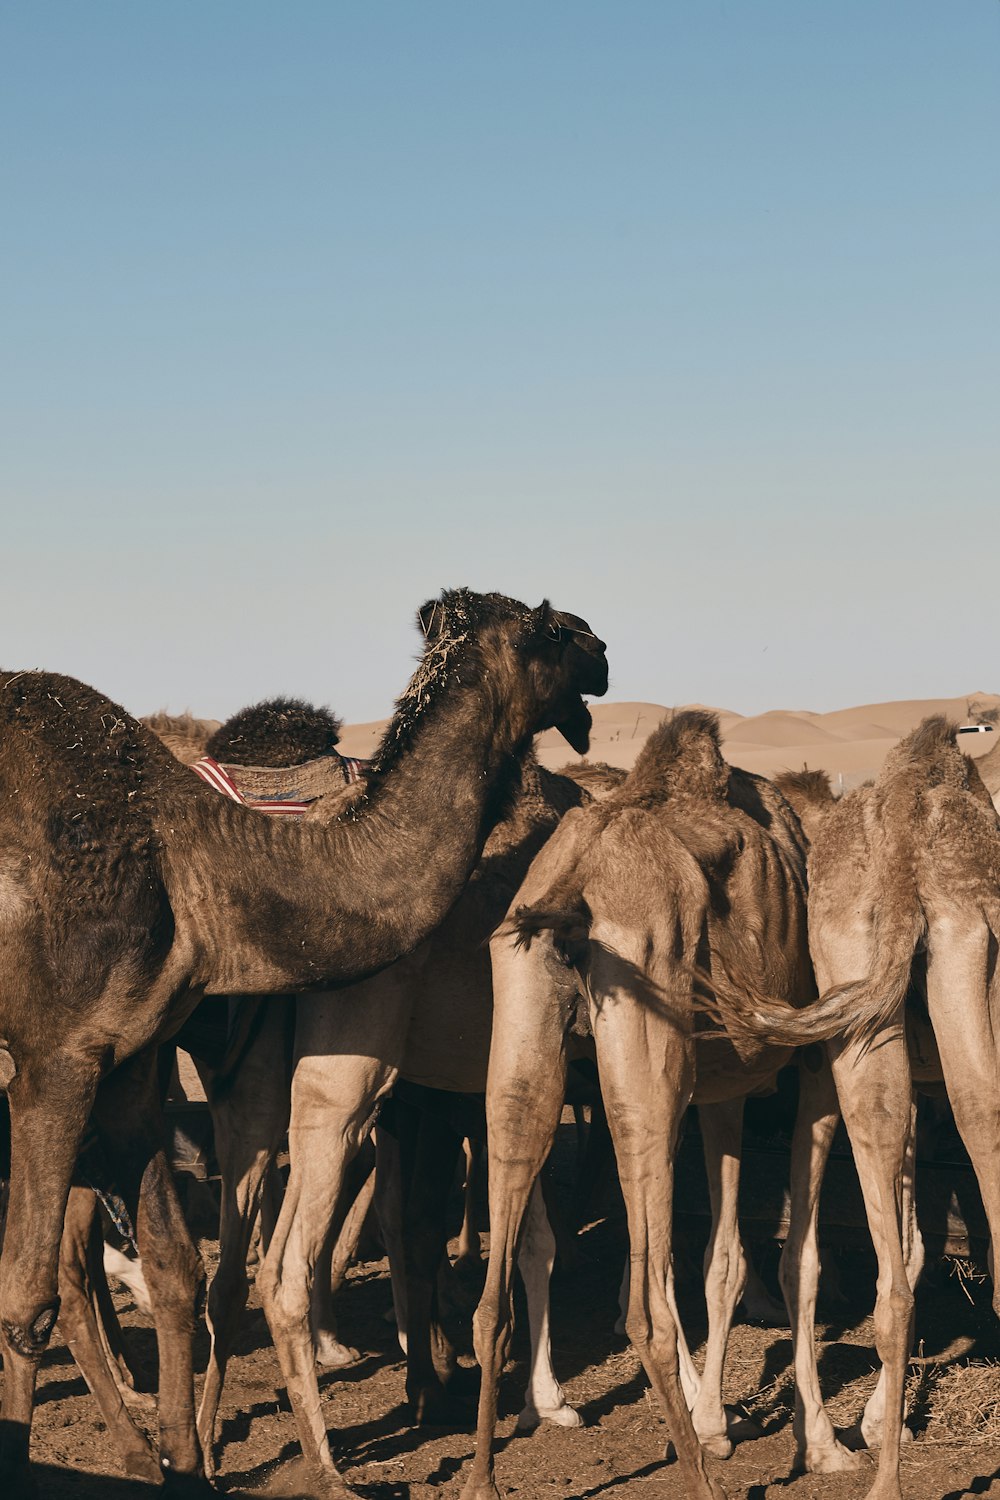 caravan of camel on desert during daytime